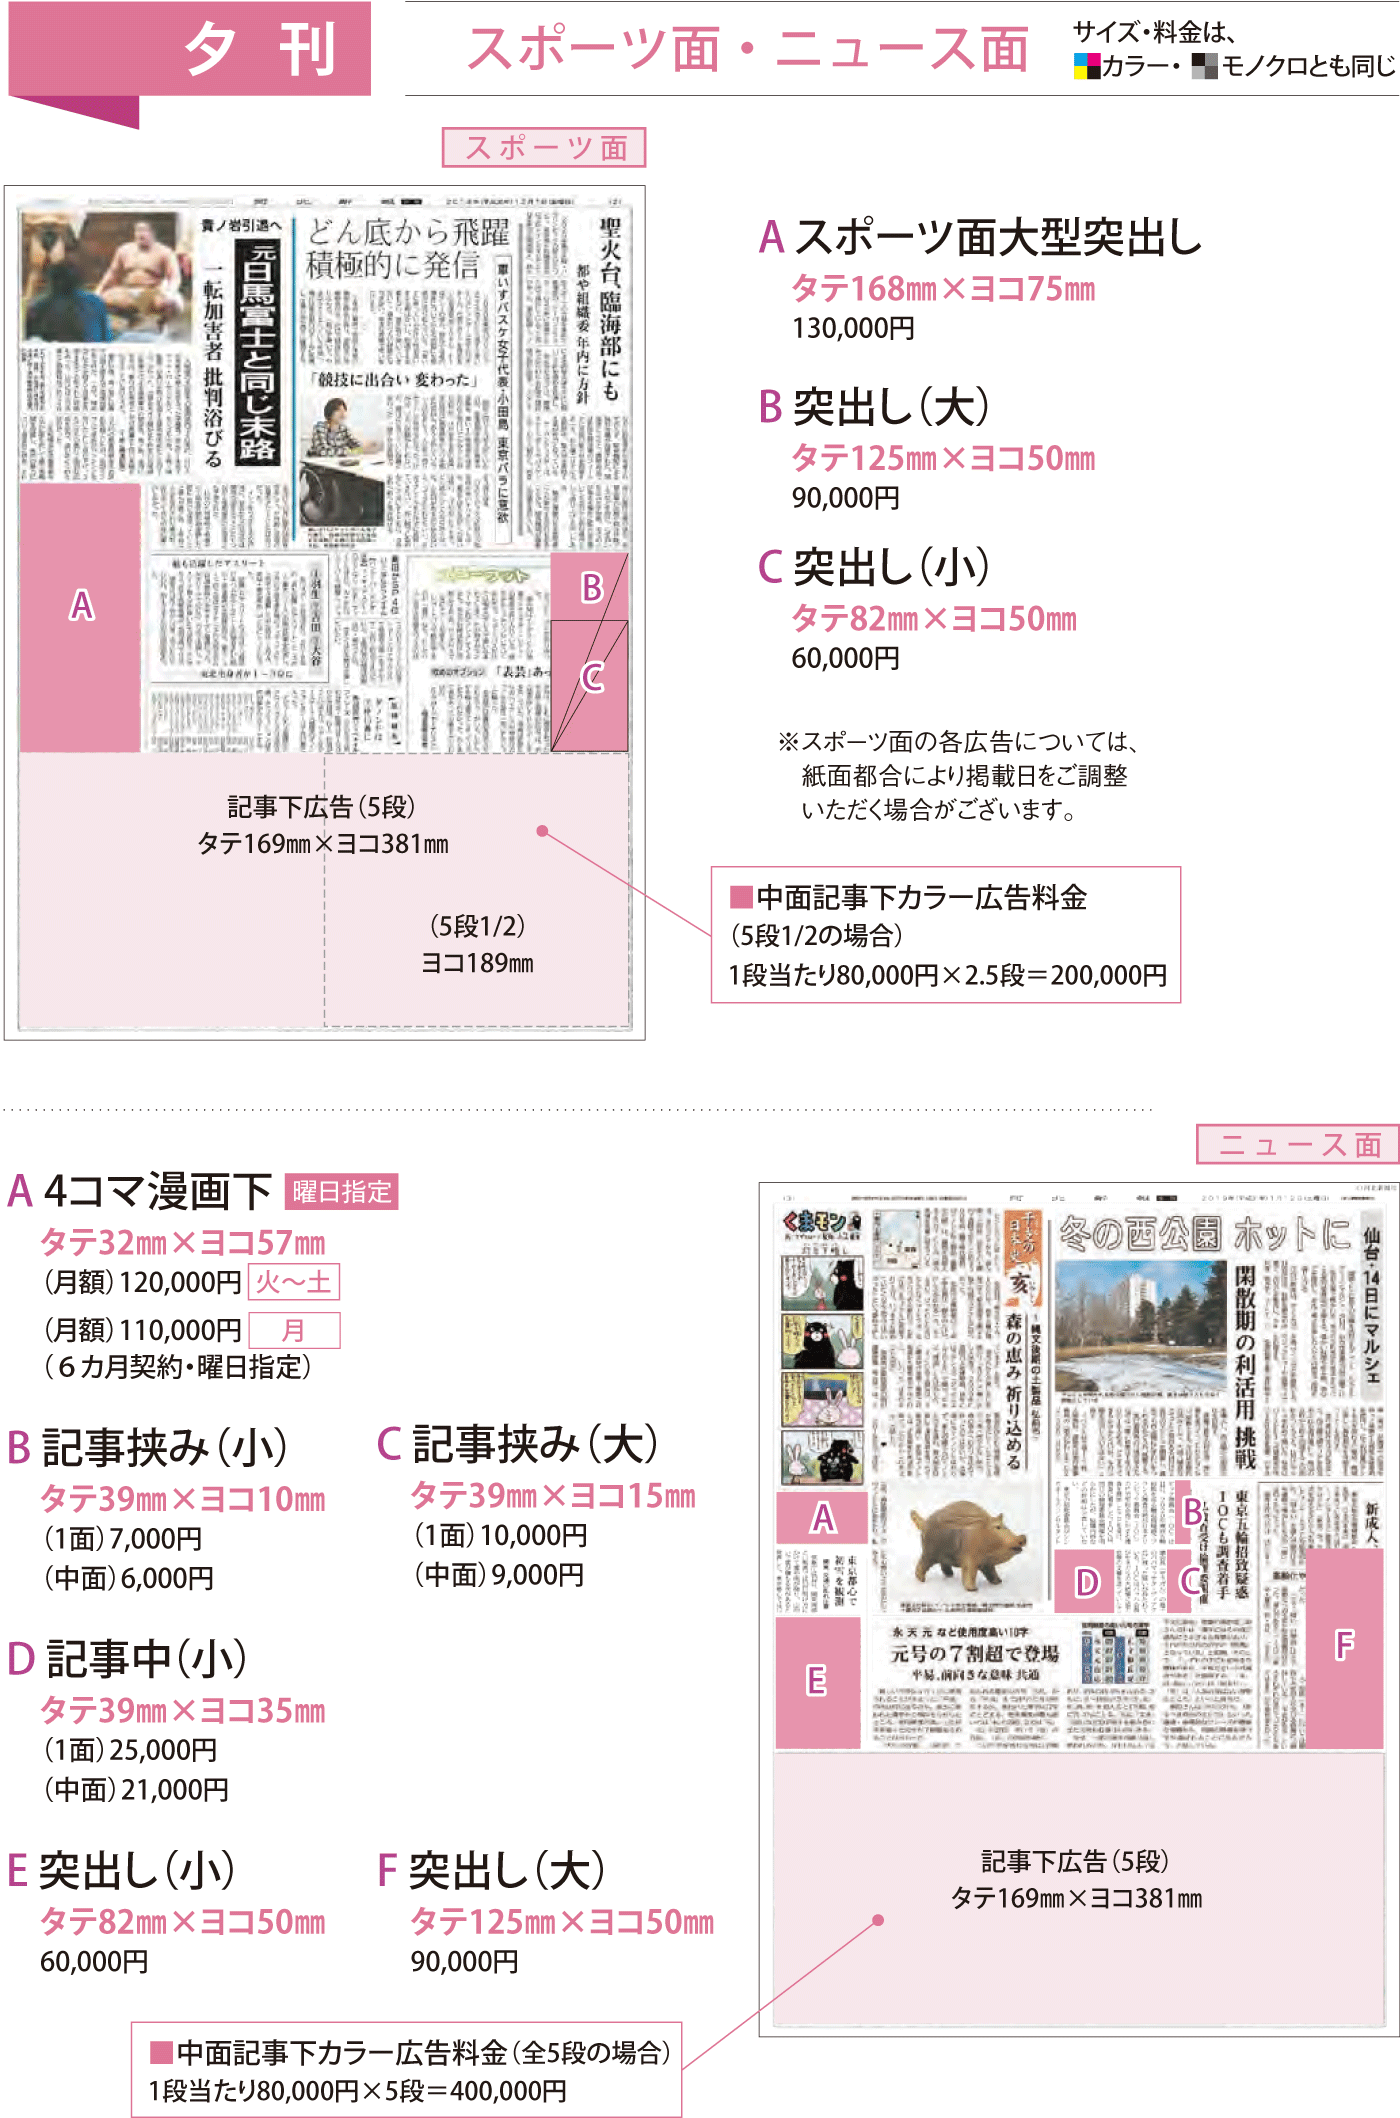 河北新報の夕刊スポーツ面ニュース面広告掲載イメージ